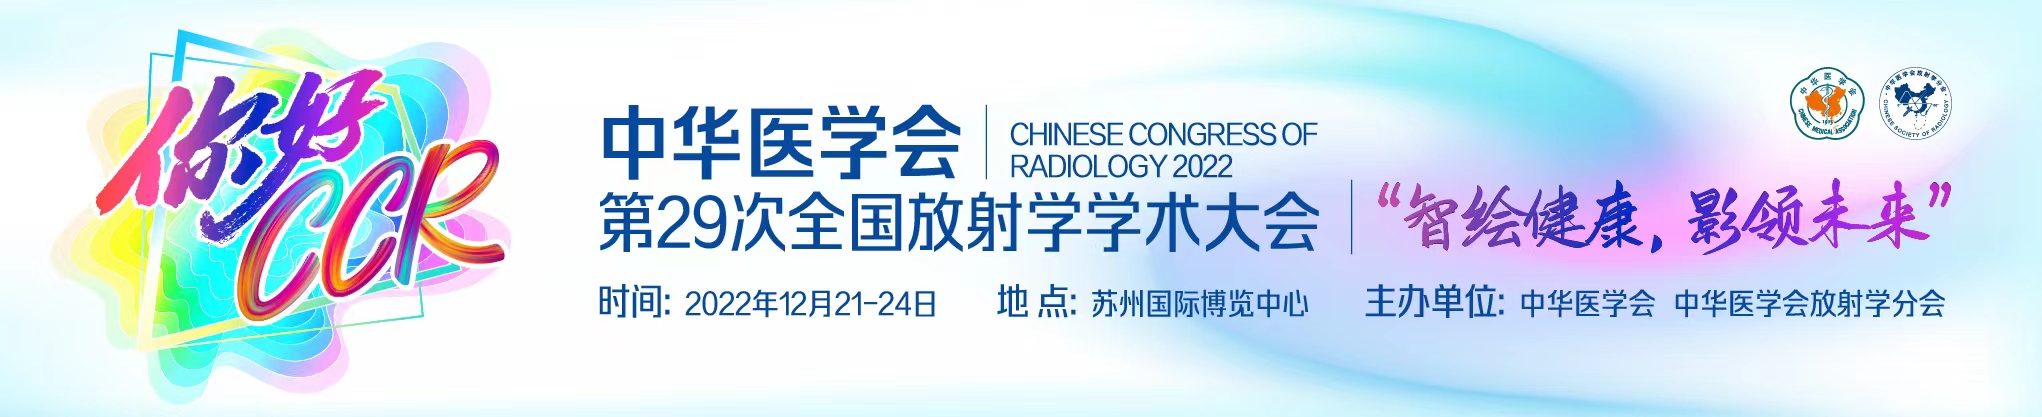 中华医学会第29次全国放射学学术大会(CCR2022 Online）